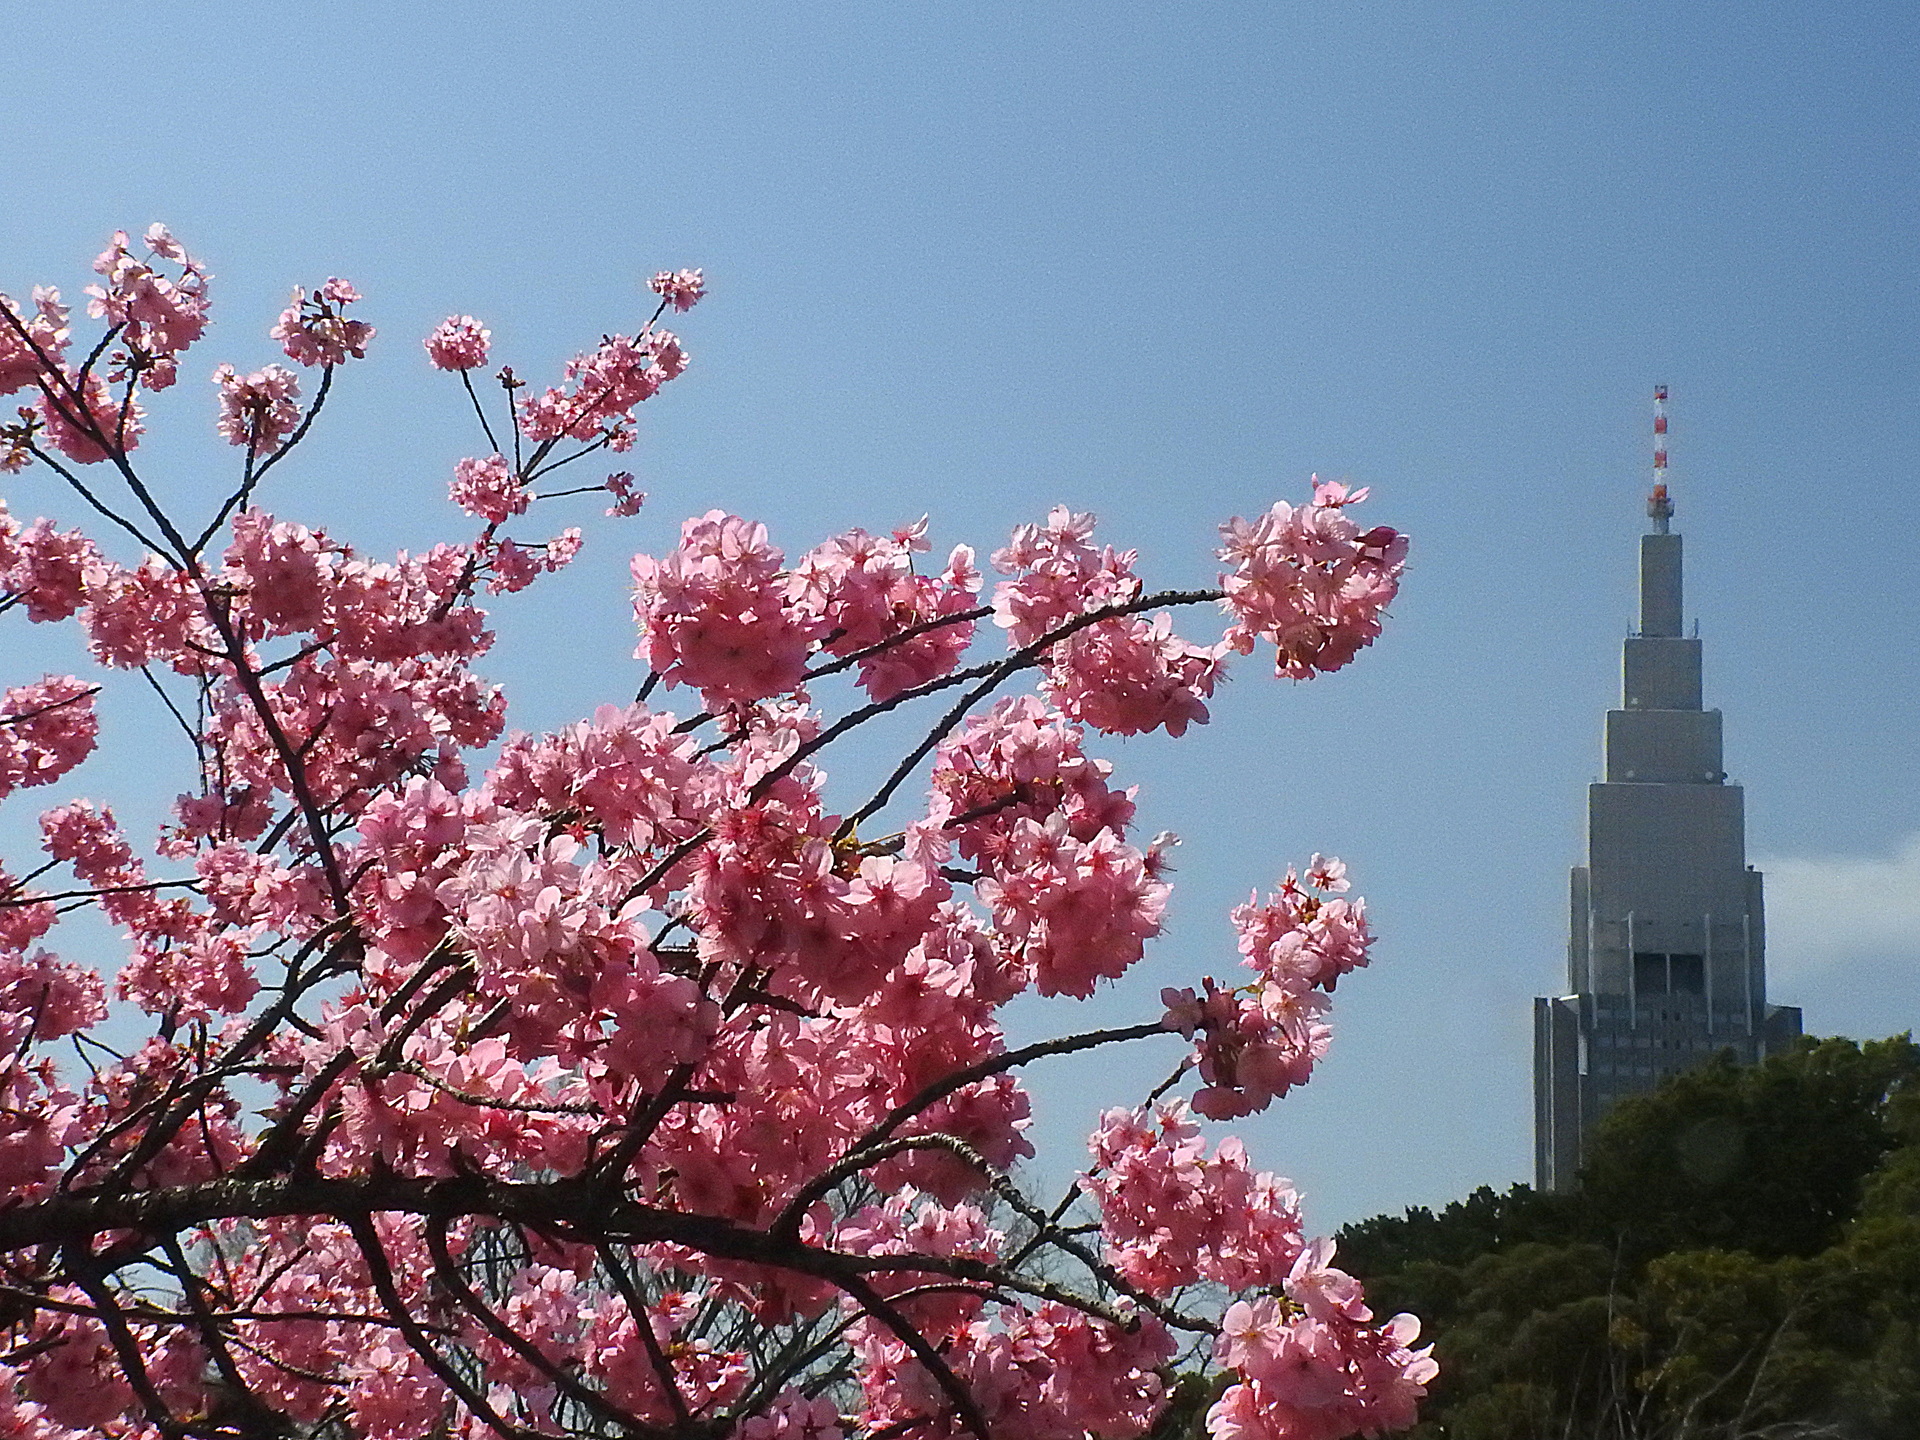 日本の風景 横浜緋桜とドコモタワー 壁紙19x1440 壁紙館